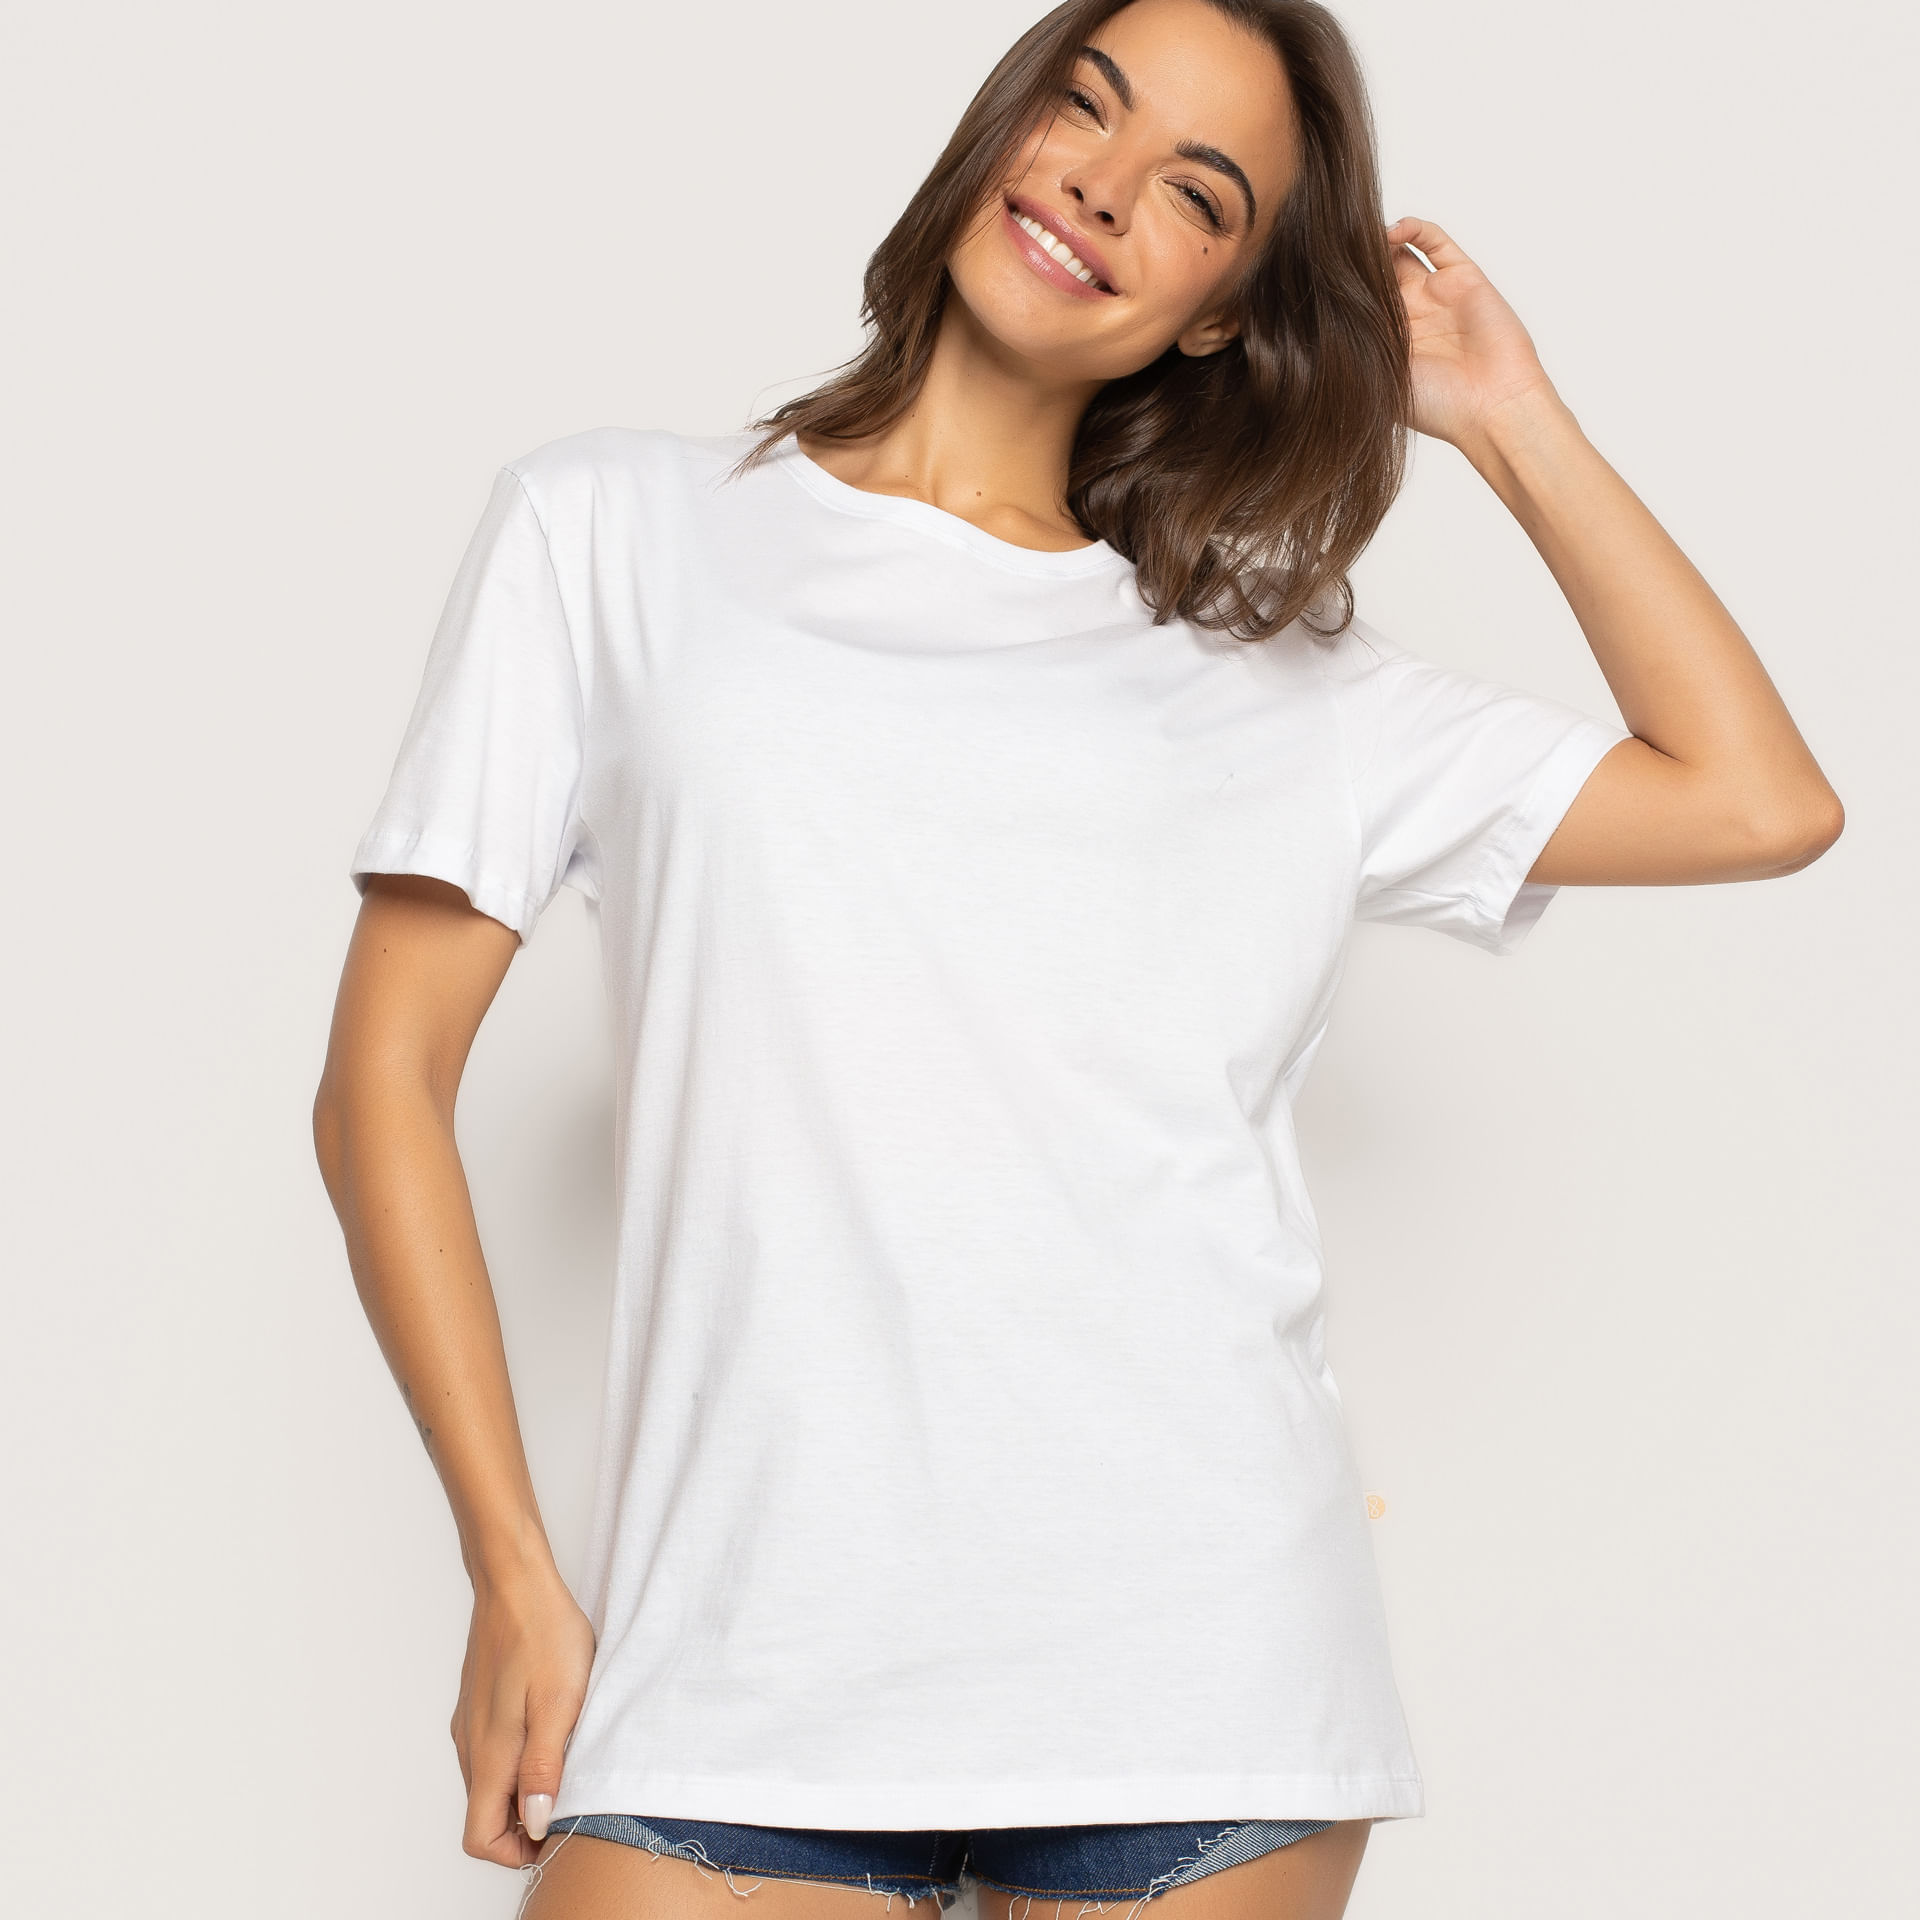 T-Shirt Branca - Livre e Leve - Calça Legging, Body, Biquíni, Maiôs e mais!